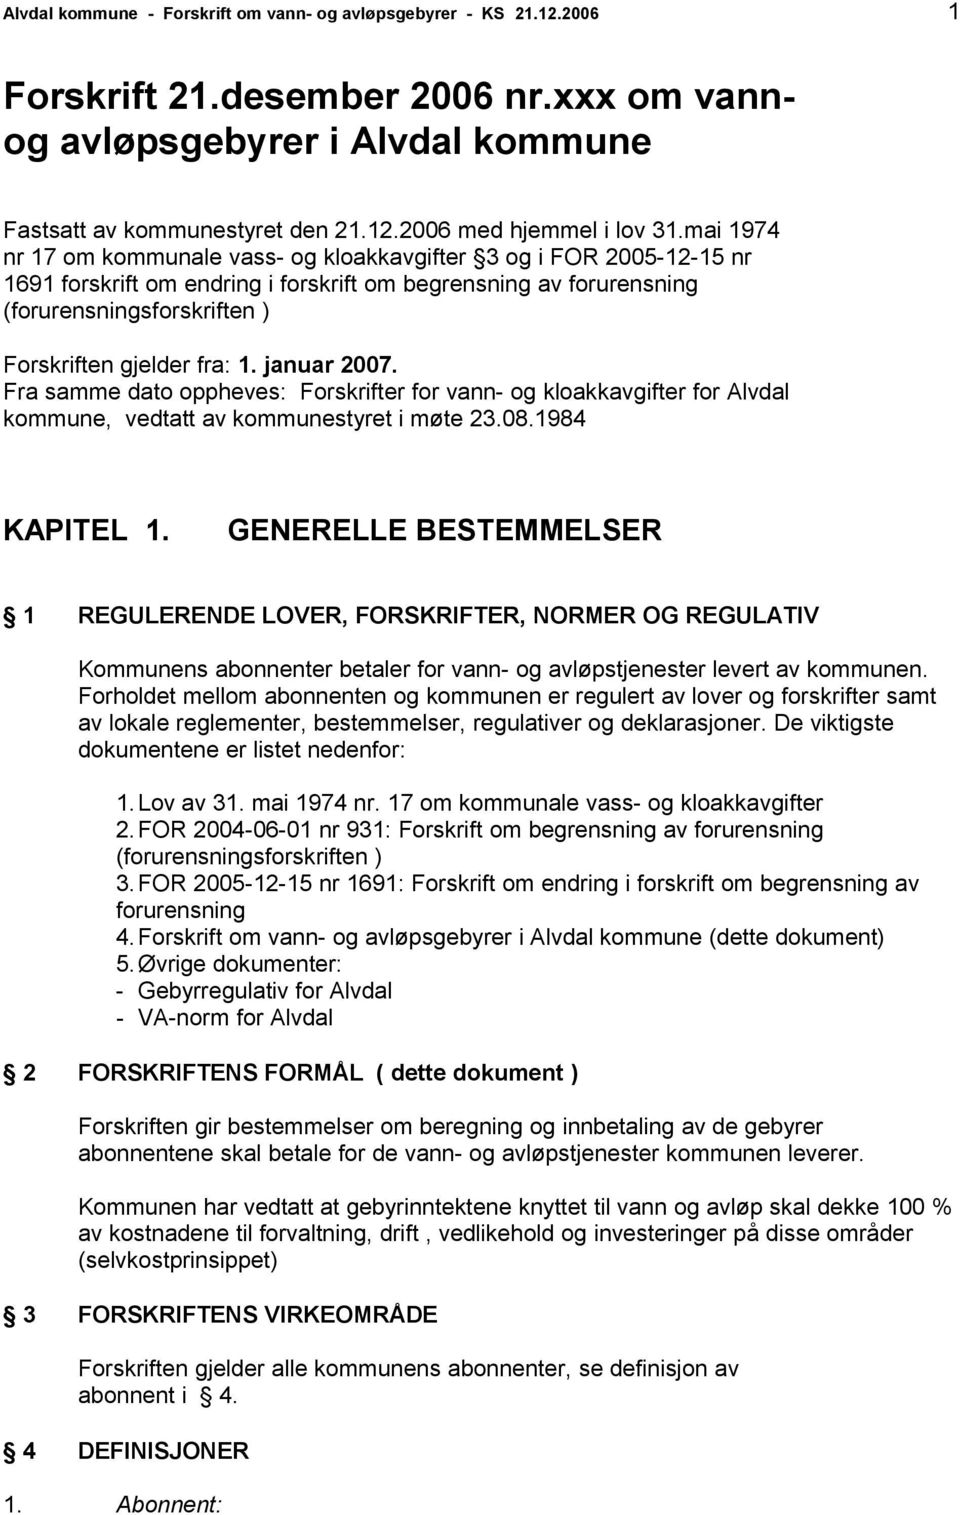 1. januar 2007. Fra samme dato oppheves: Forskrifter for vann- og kloakkavgifter for Alvdal kommune, vedtatt av kommunestyret i møte 23.08.1984 KAPITEL 1.